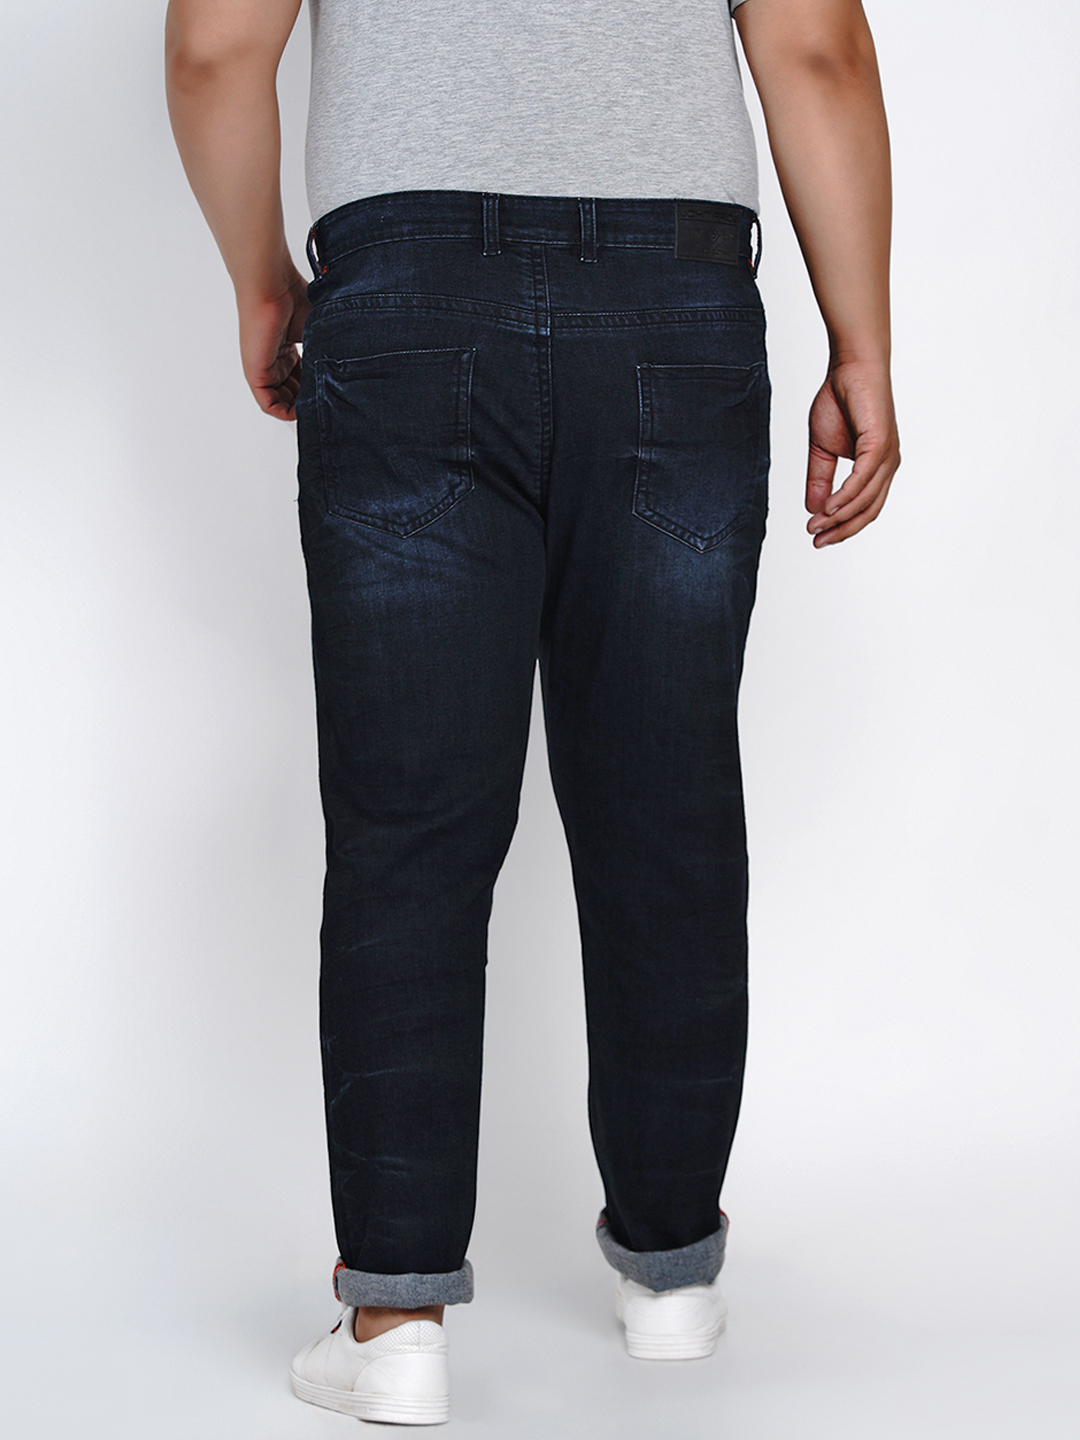 bottomwear/jeans/JPJ1282/jpj1282-5.jpg